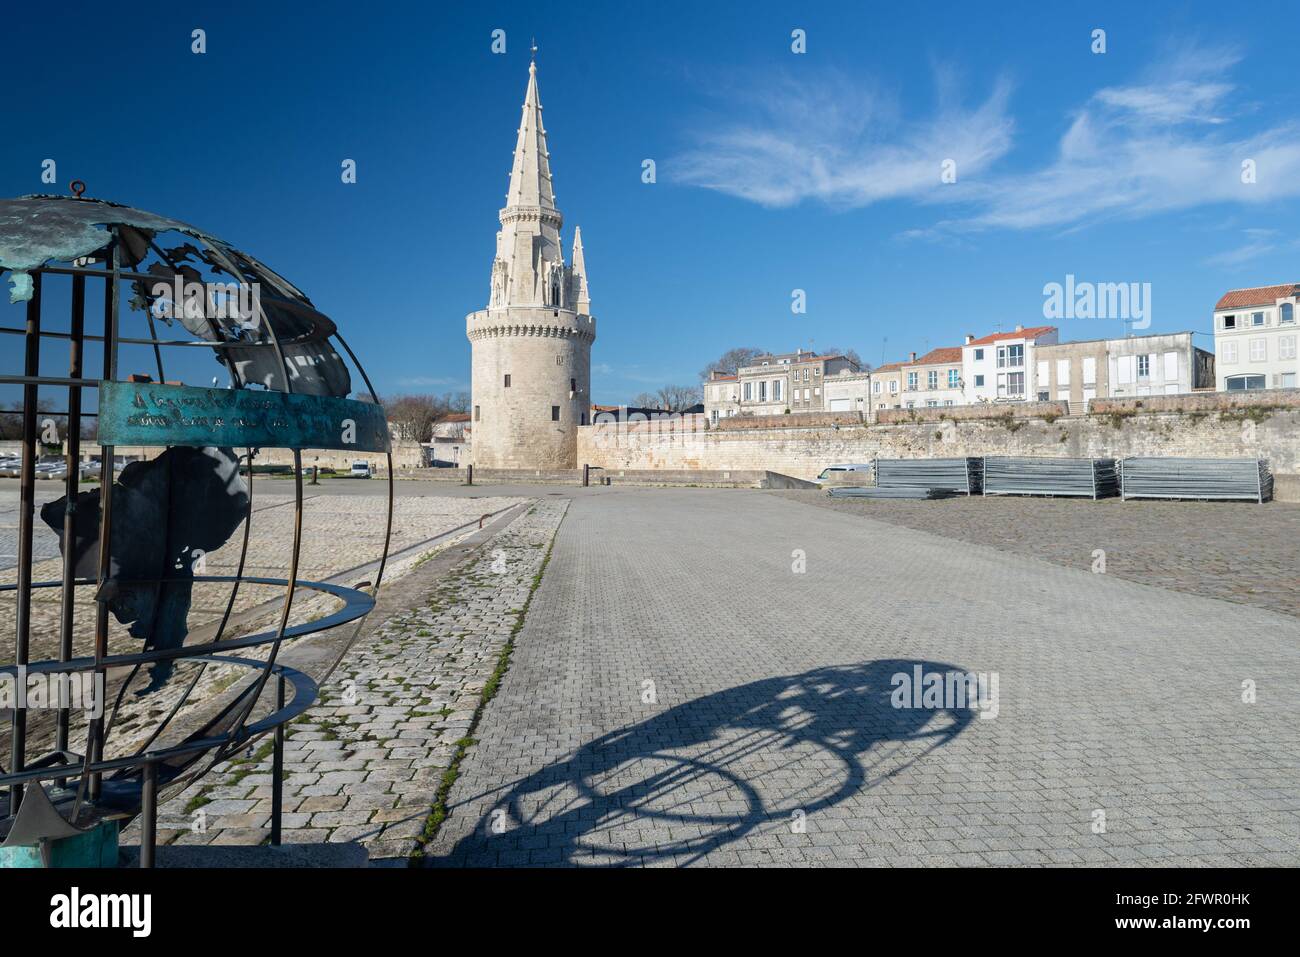 Ancient Lantern Tower (Tour de la Lanterne) in harbour at La Rochelle, France on Atlantic coast of Charente Maritime Stock Photo